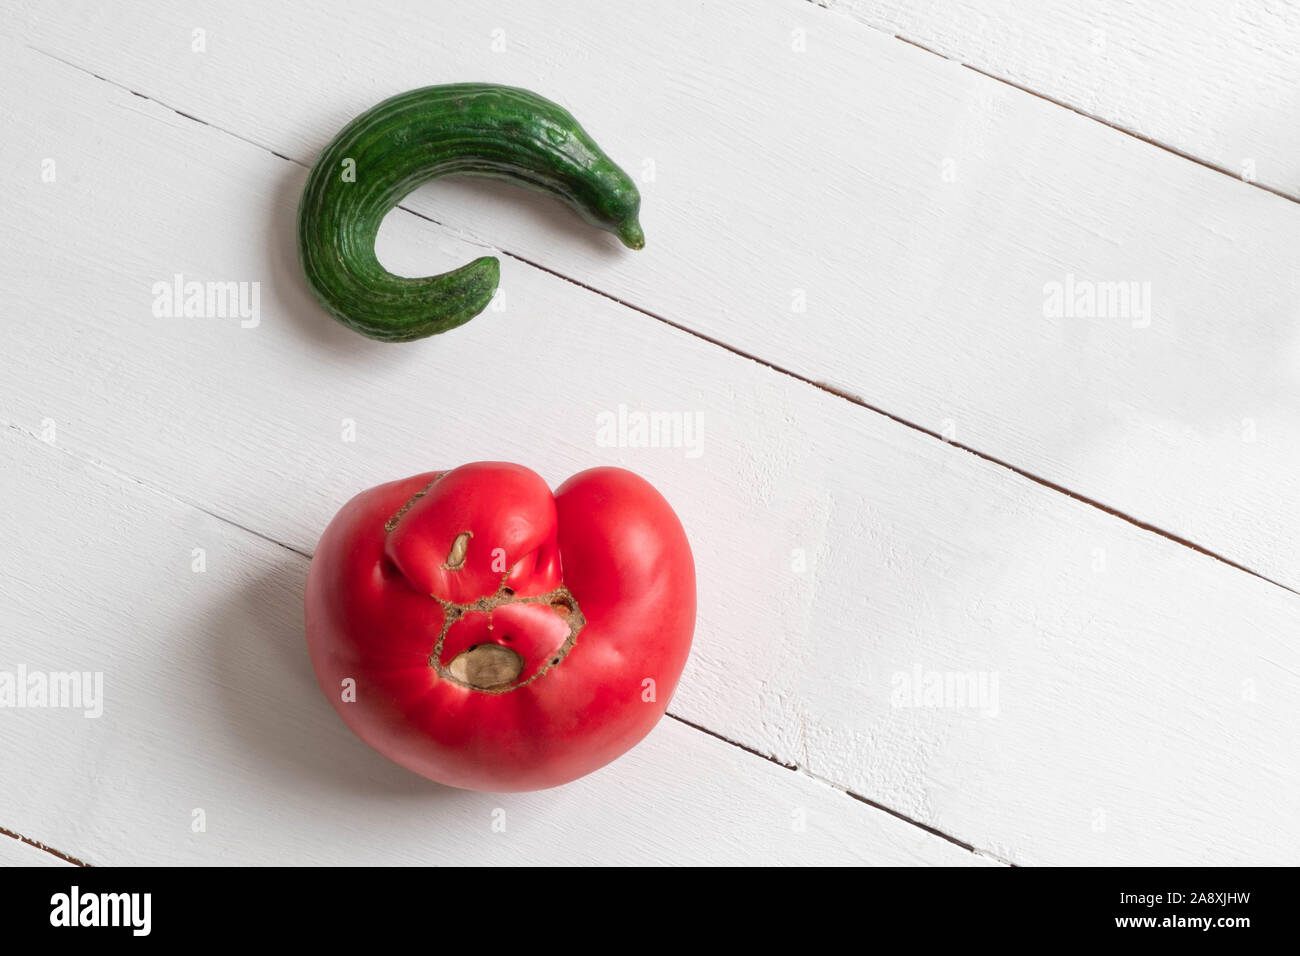 Concombre tomate et légumes laid on white background Banque D'Images